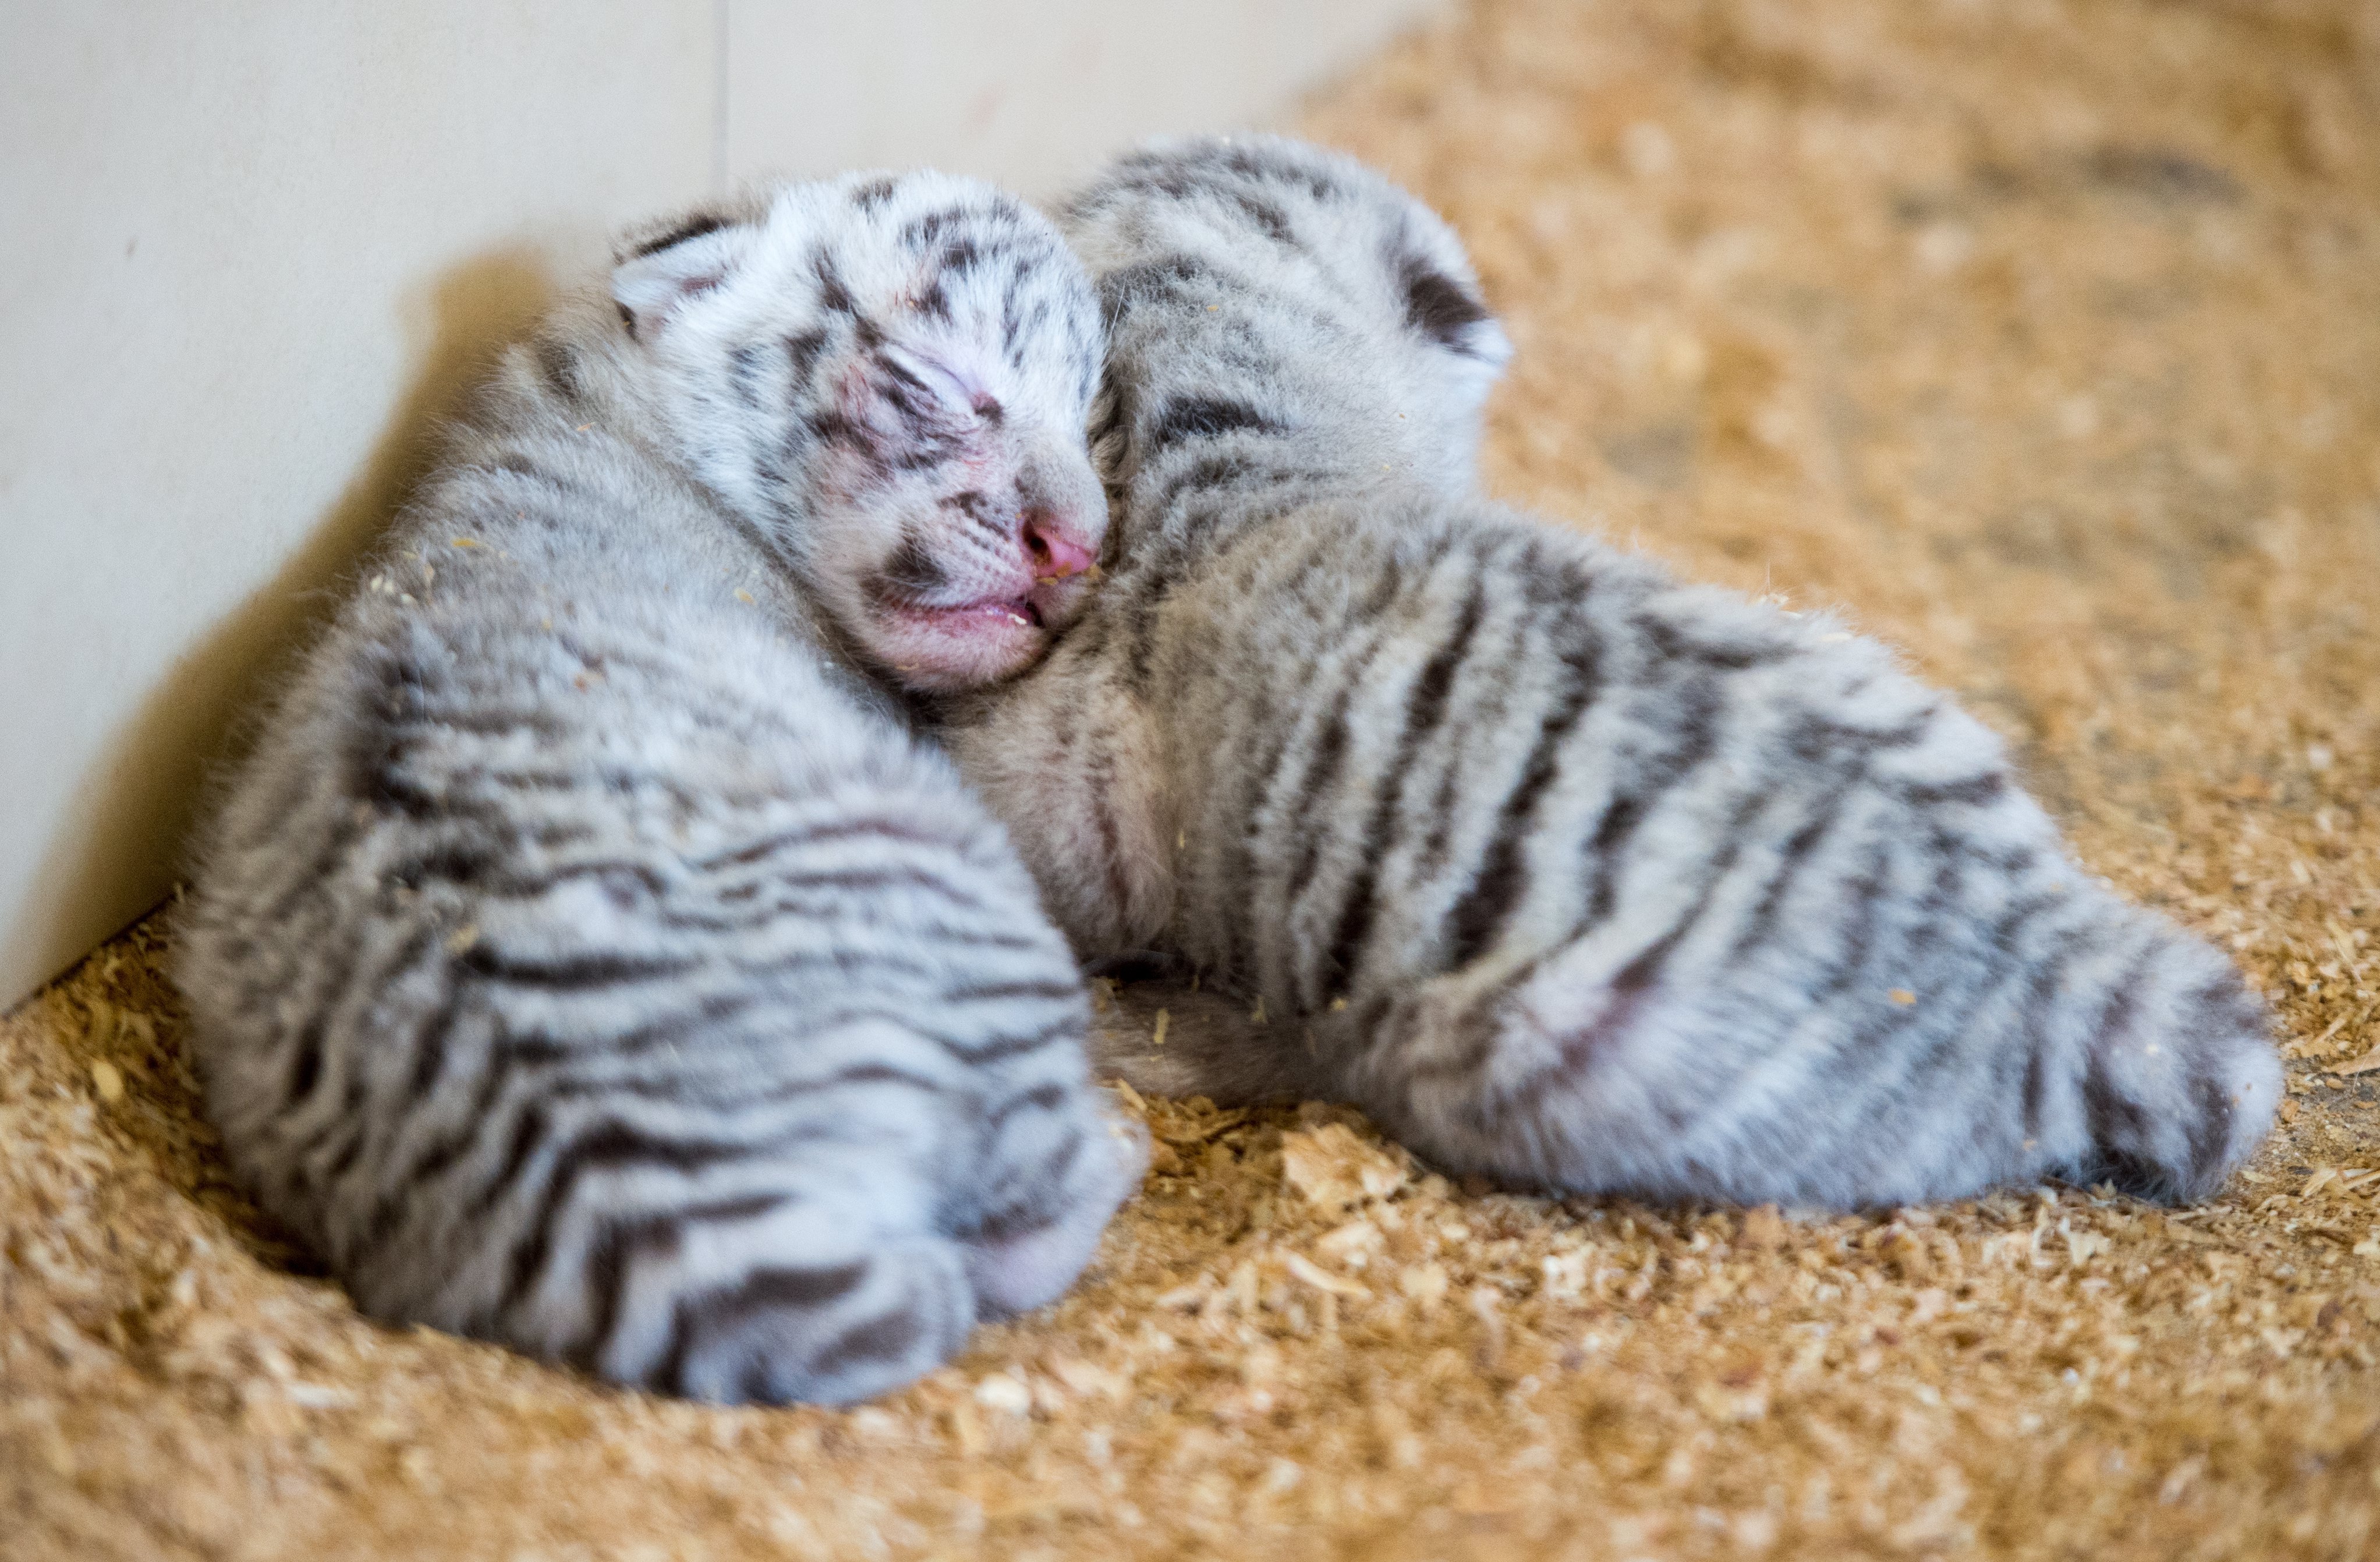 Австрийска зоологическа градина представи новородените си четири бели тигърчета - Фалко, Тото, Миа и Мауци, съобщи Ройтерс. Бялата зоологическа градина е на 150 км от Виена. Тя е популярна туристическа дестинация. Тигърчетата са се родили на 22 март. Те ще останат с майка си една година, а след това ще бъдат дарени на други зоологически градини.